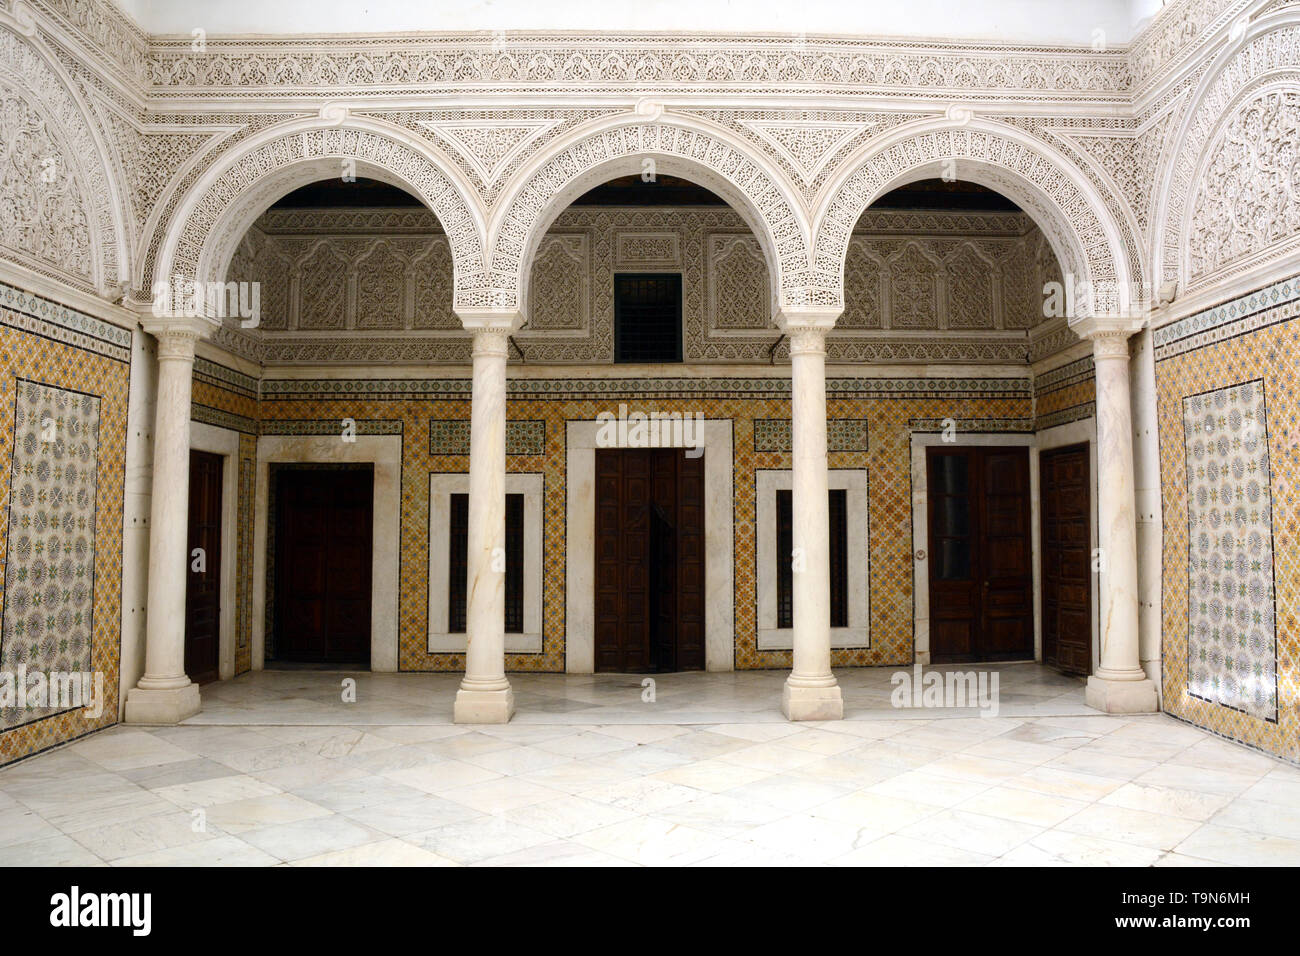 Des motifs architecturaux islamiques et pose de carreaux dans la cour centrale d'un 17e siècle accueil traditionnel dans la médina (vieille ville) de Tunis, Tunisie. Banque D'Images